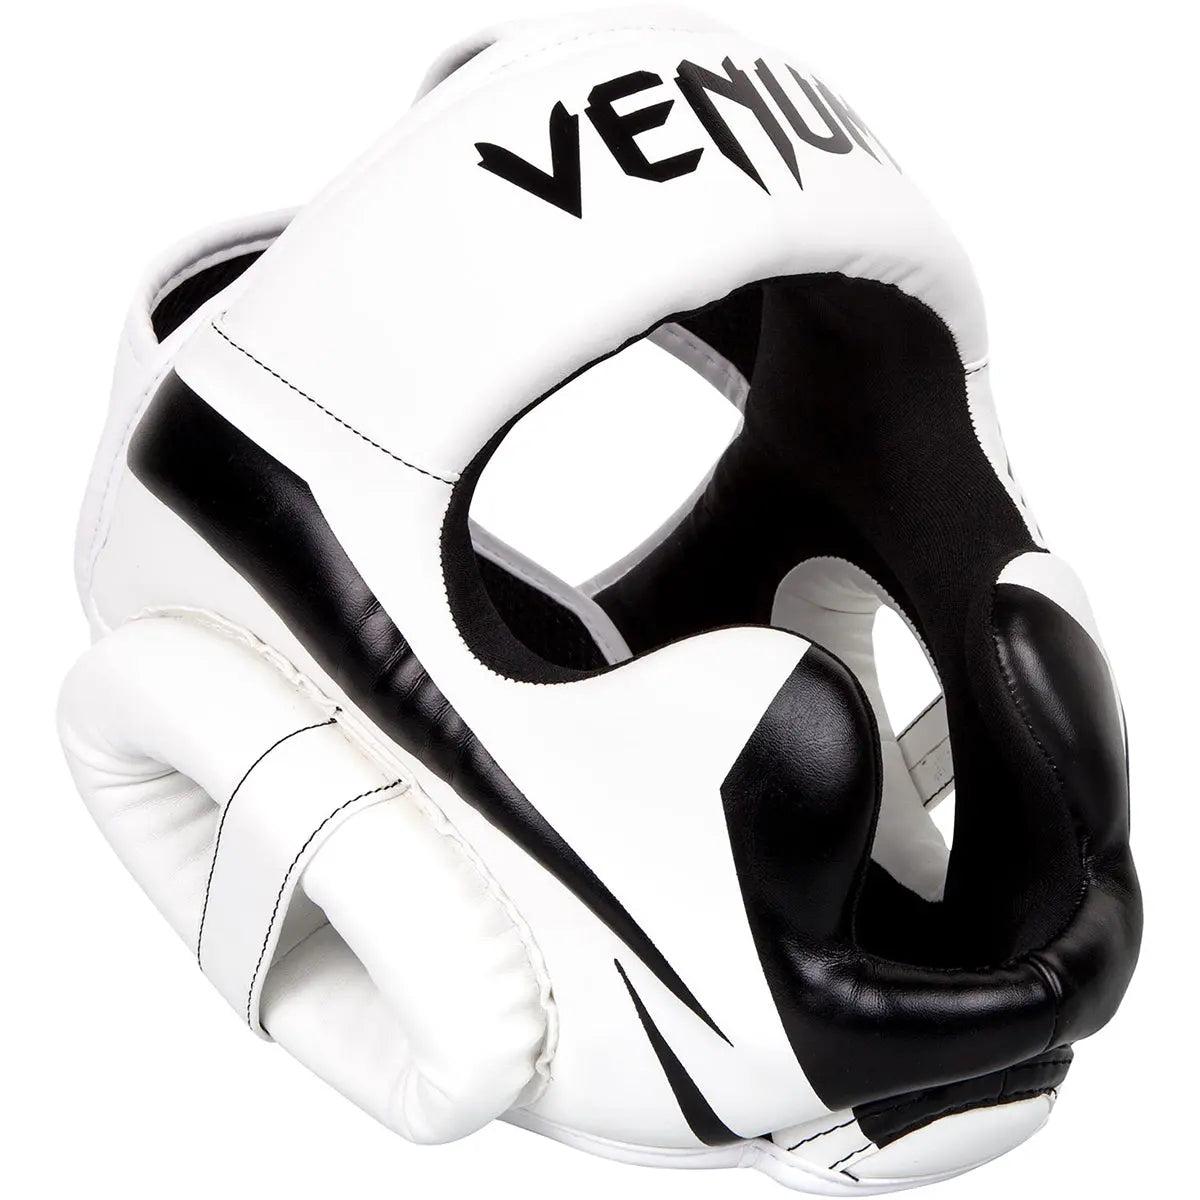 Venum Elite Boxing and MMA Protective Headgear